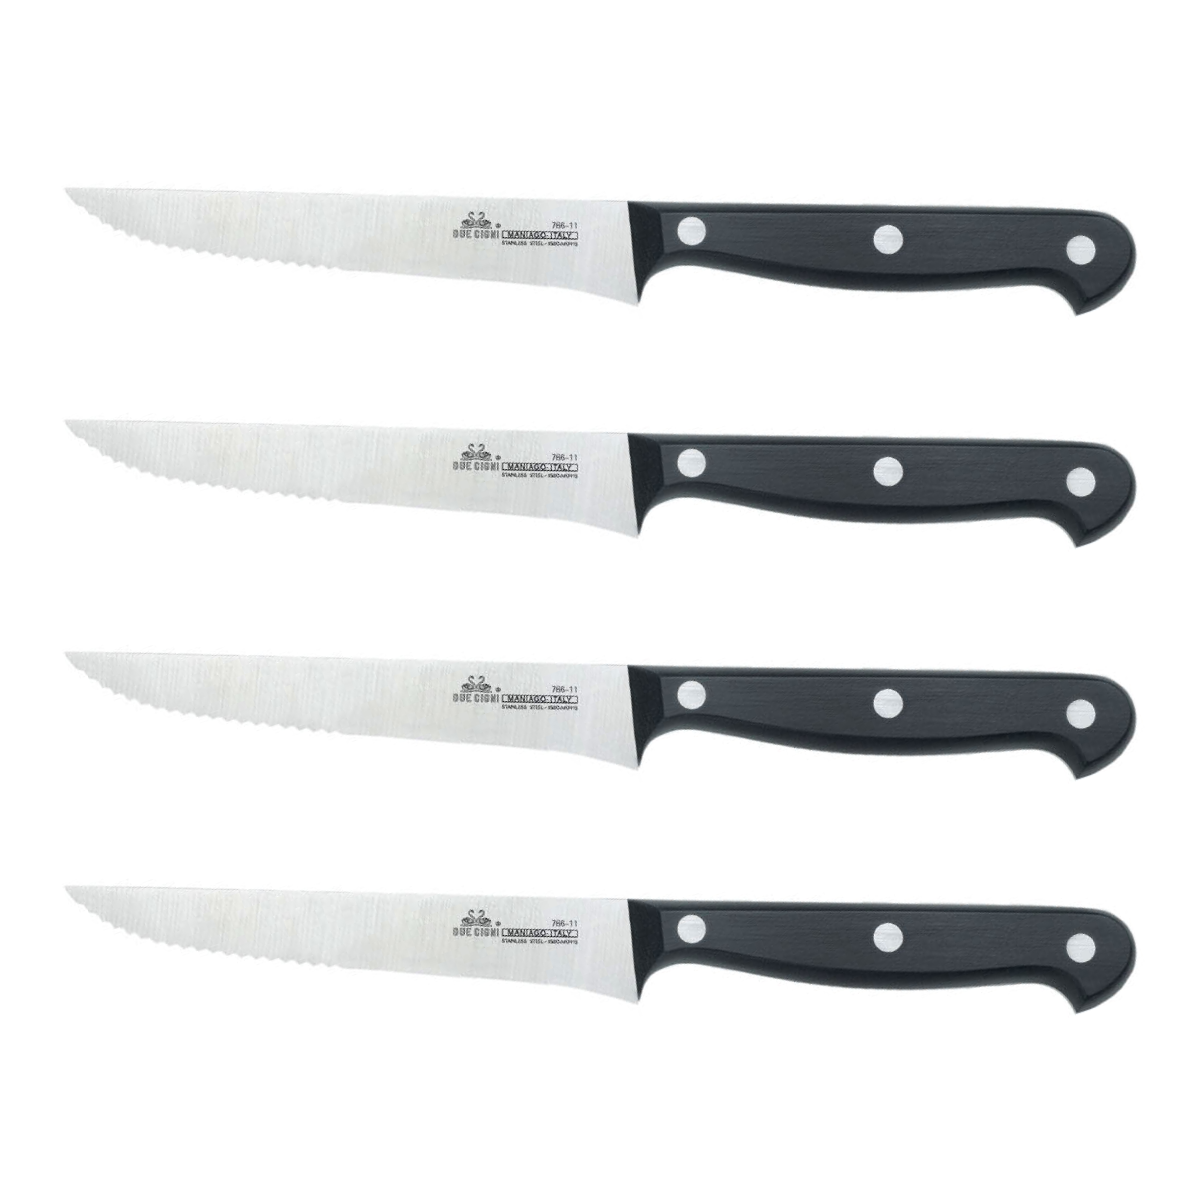 4" Serrated Dinner Steak Knives